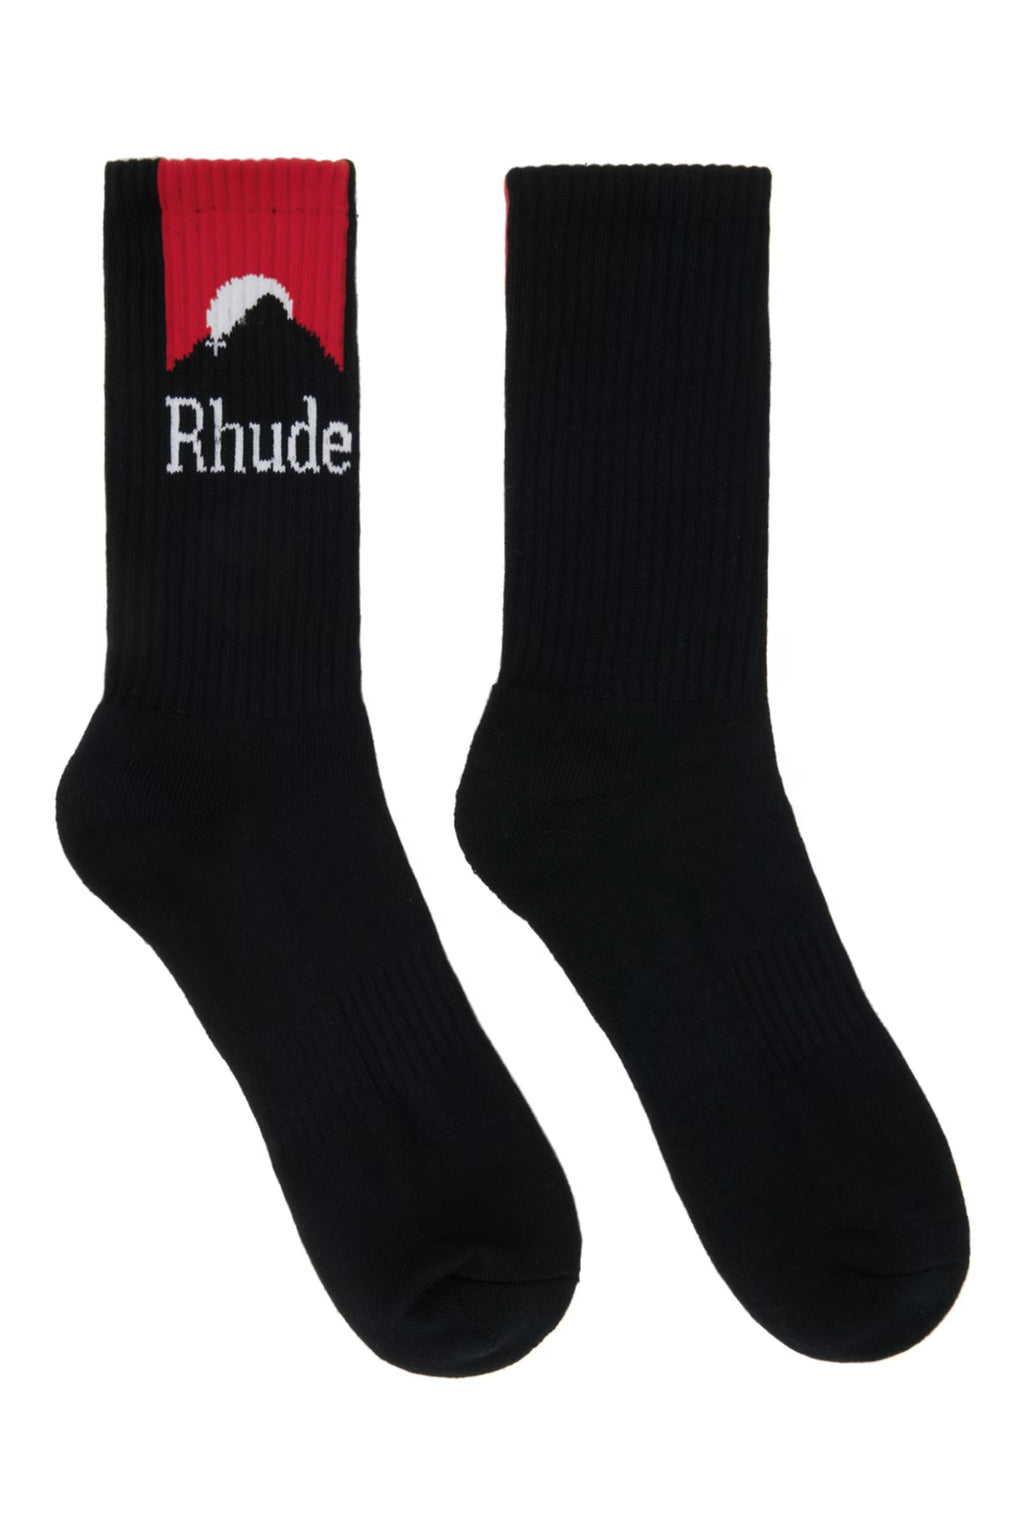 RHUDE MOONLIGHT LOGO BLACK/RED